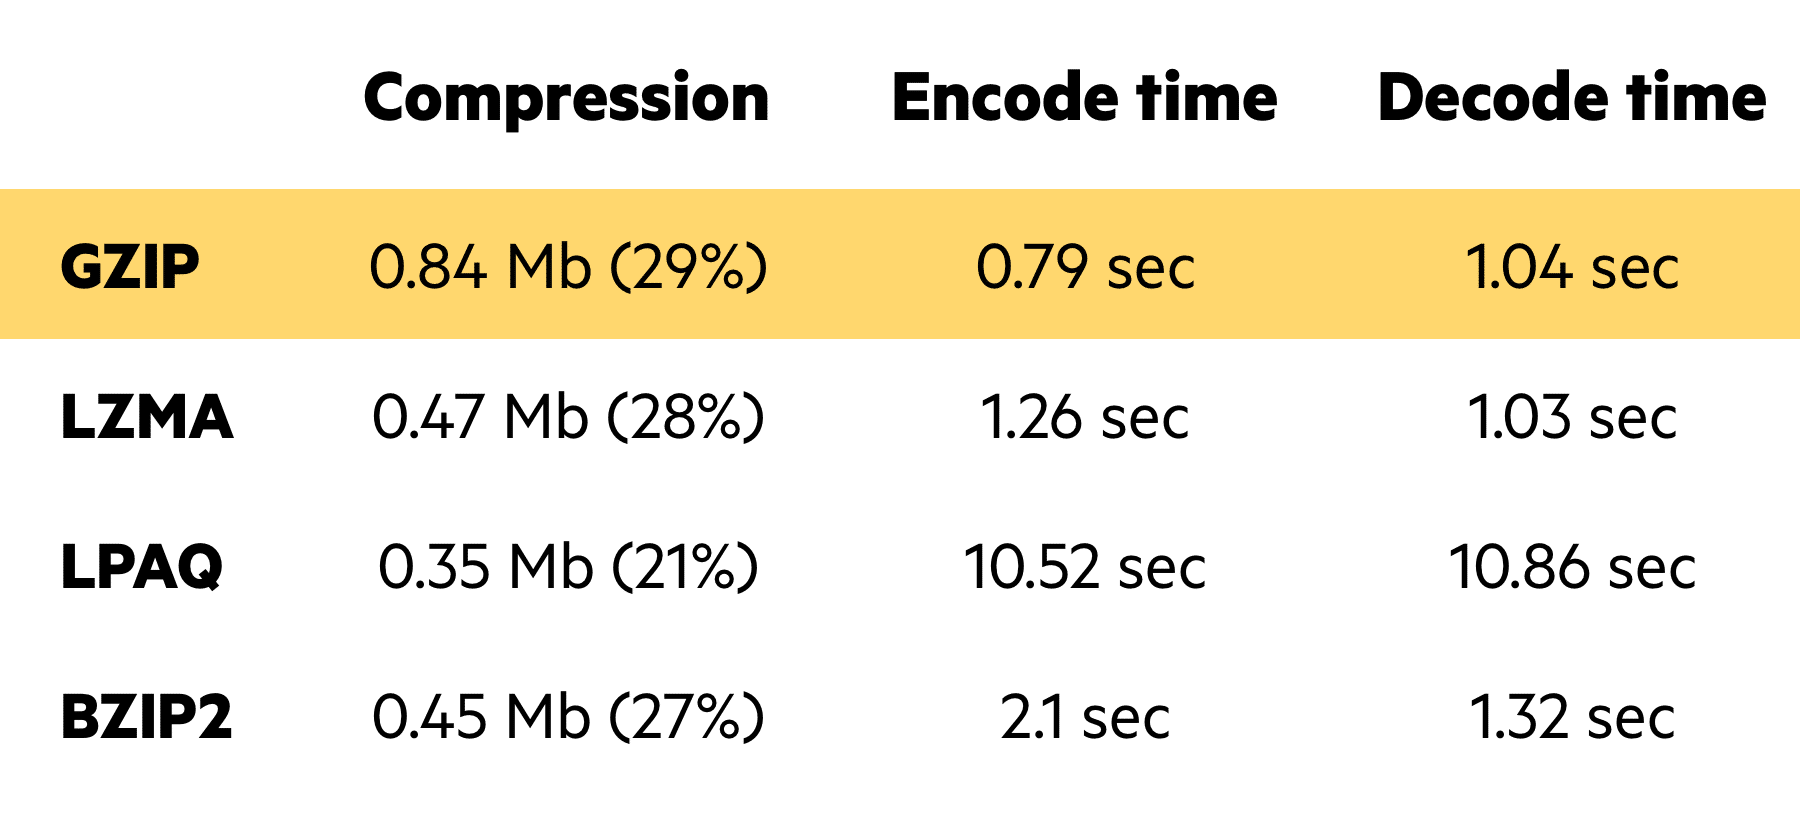 Imperva CDN Guide: File Compression